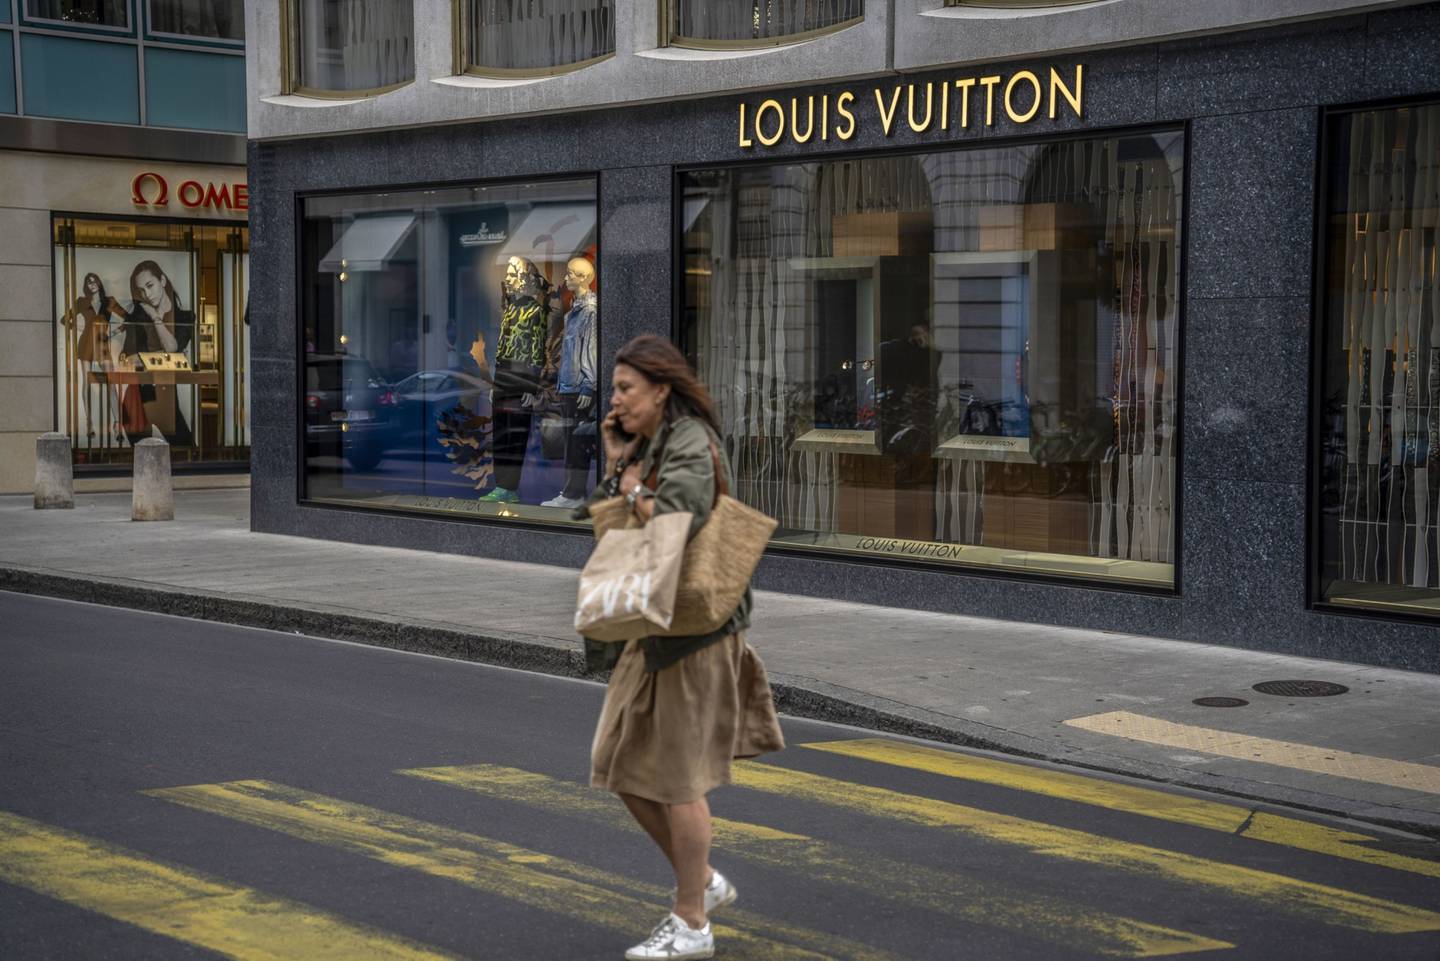 Marcas de luxo como a Louis Vuitton e a Gucci estão apostando em restaurantes com chefs renomados